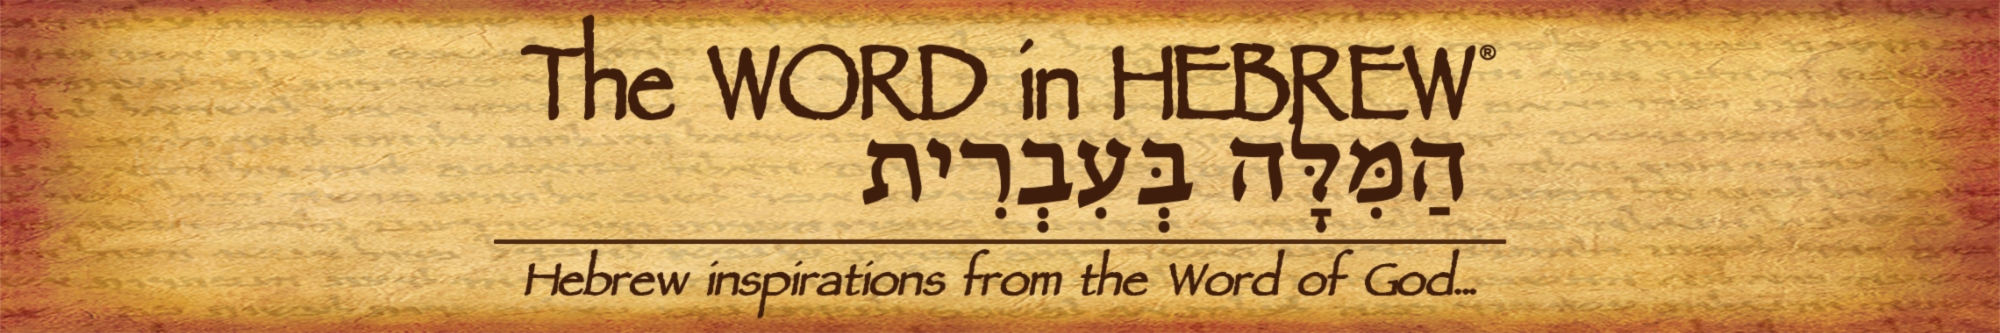 Showroom - The WORD in HEBREW